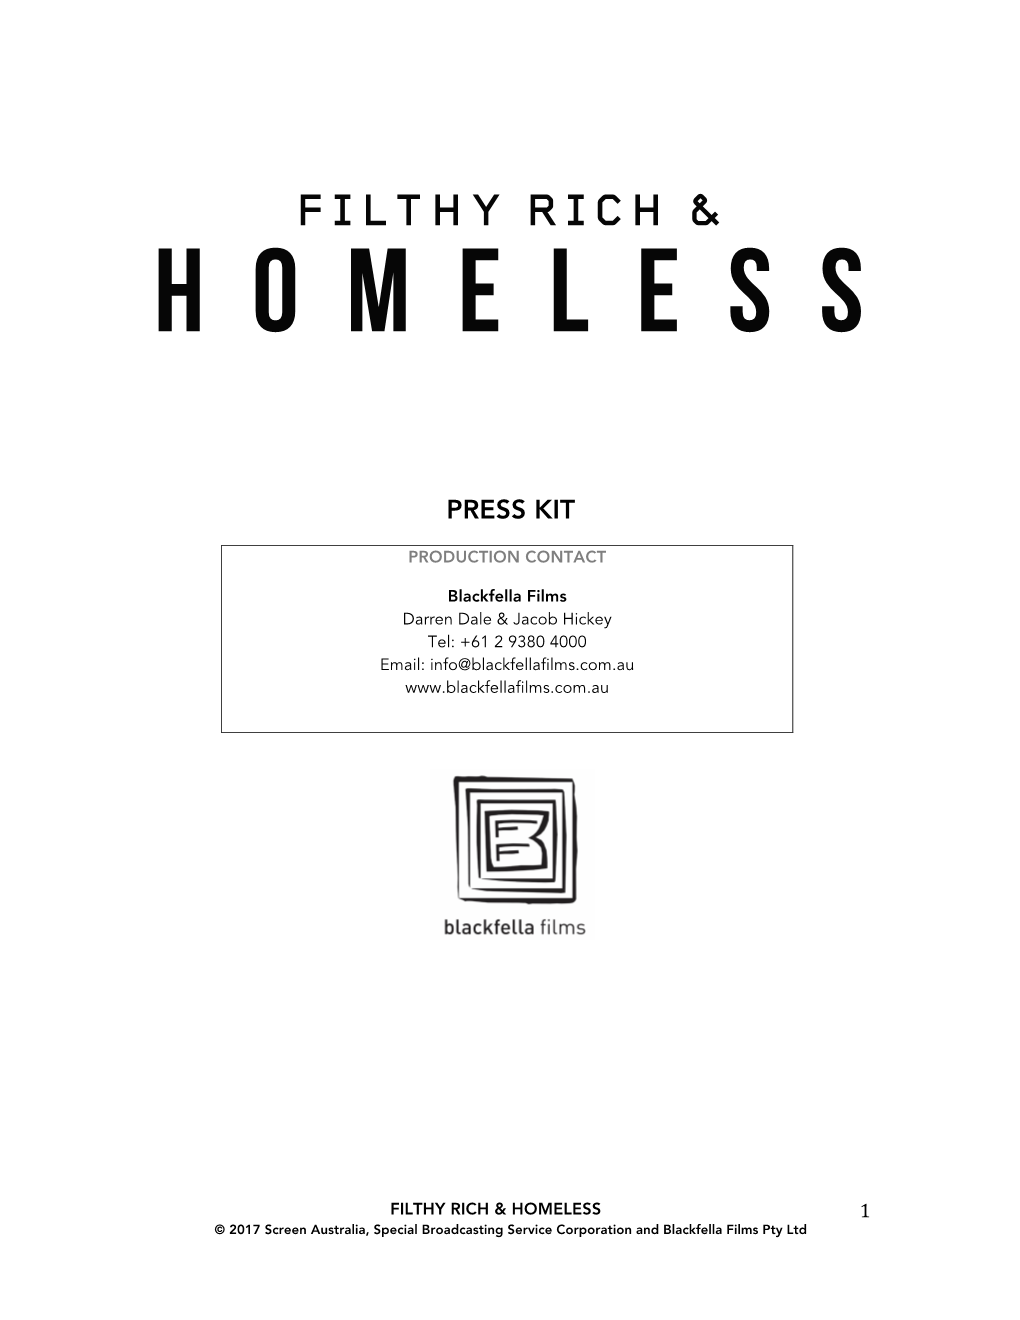 Filthy Rich & Homeless MEDIA KIT 15.5.17